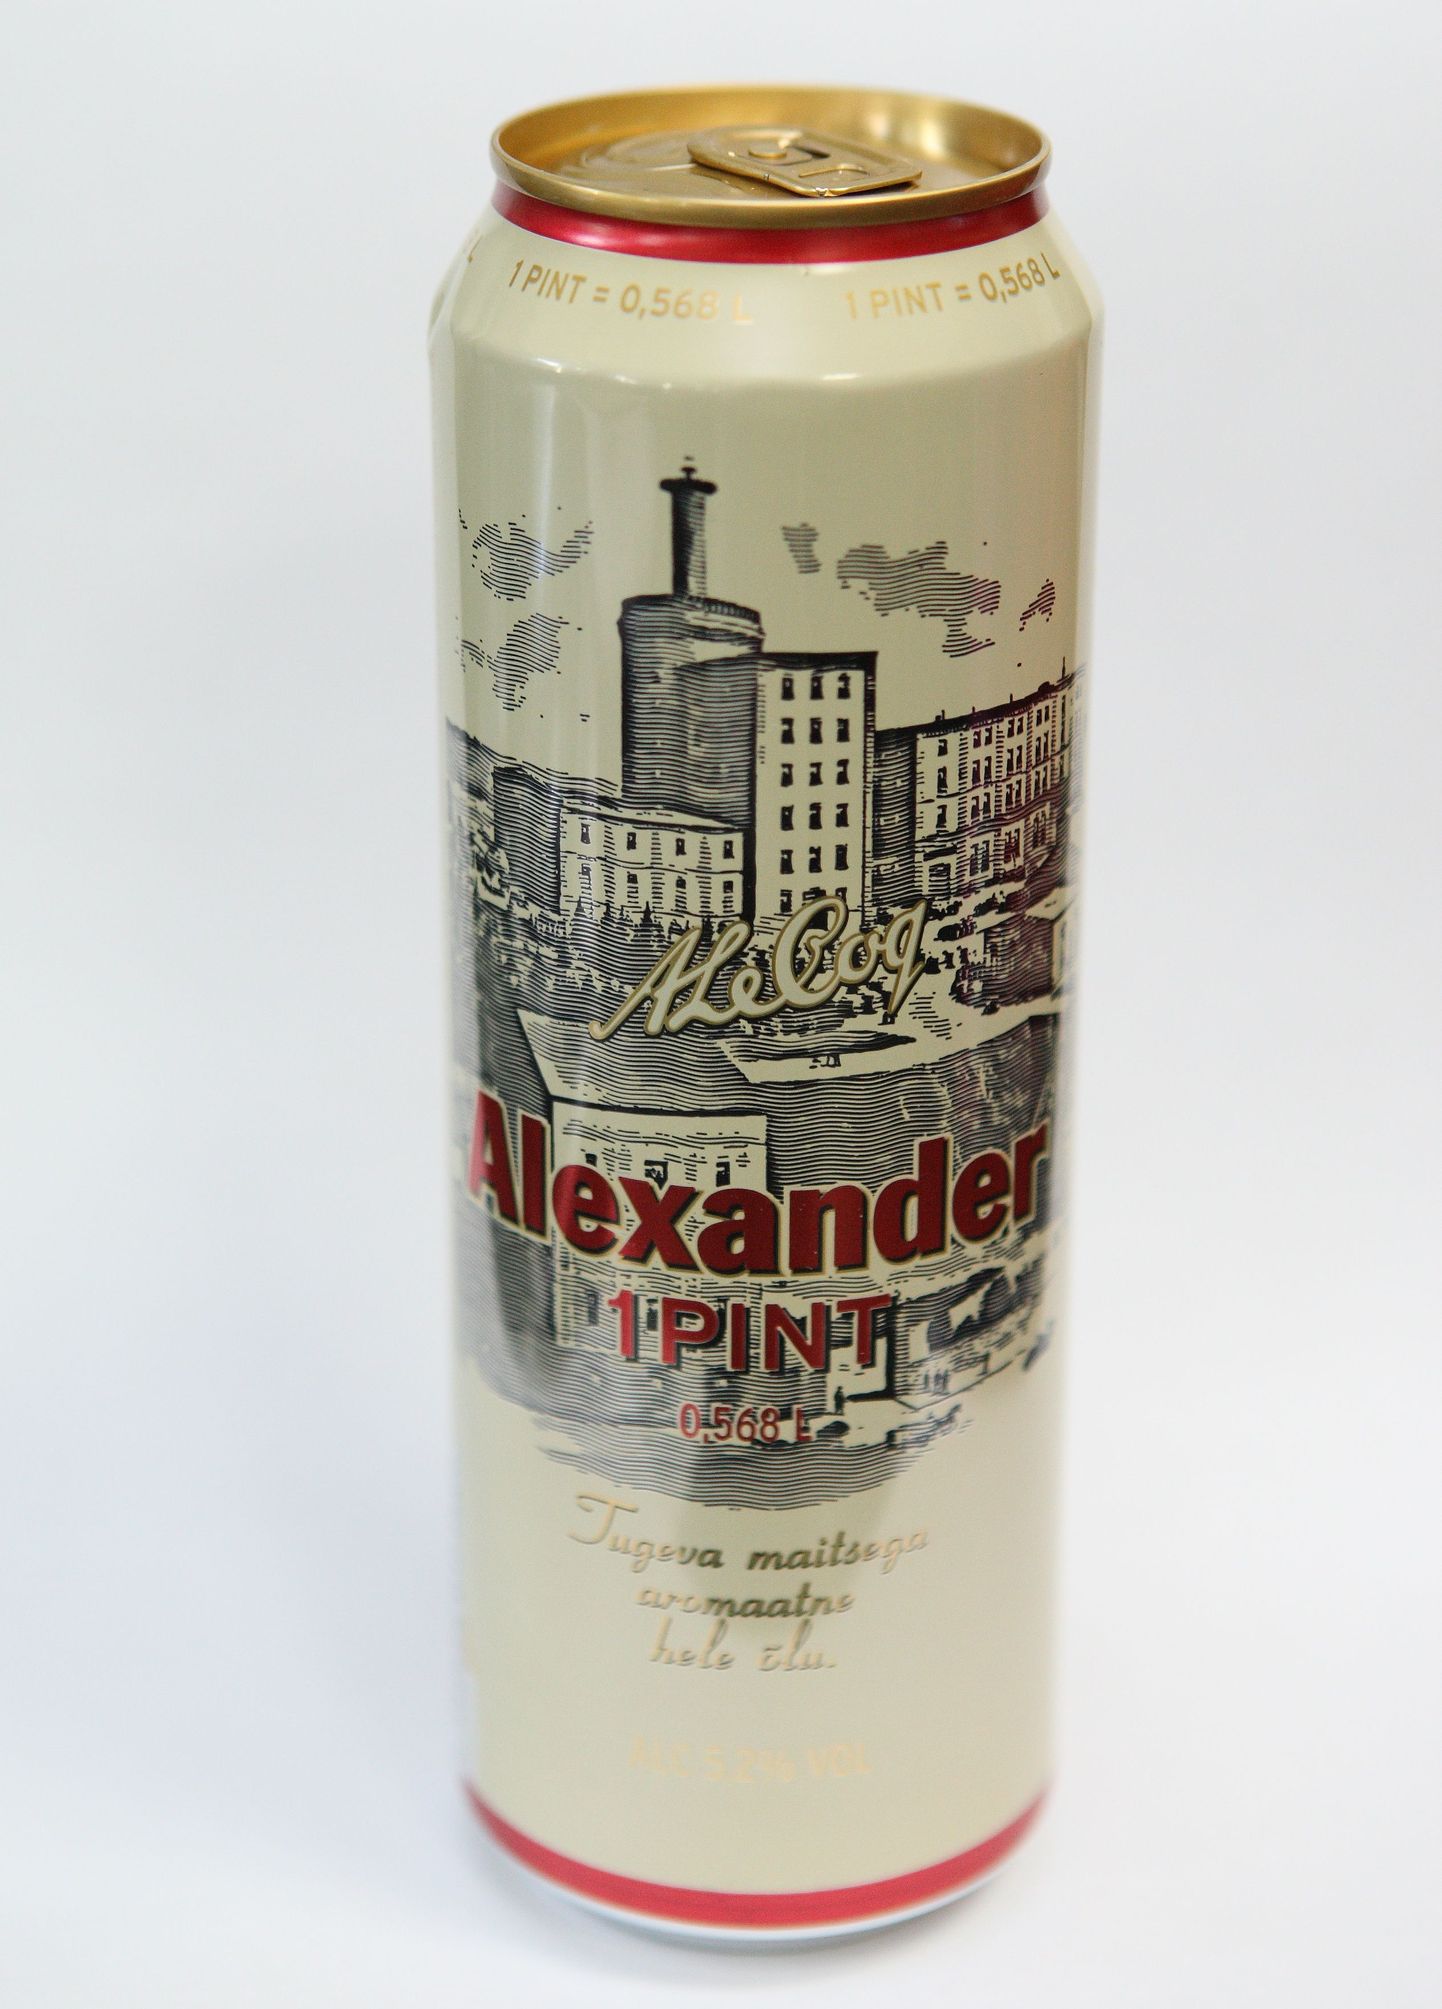 Alexandri õlu.